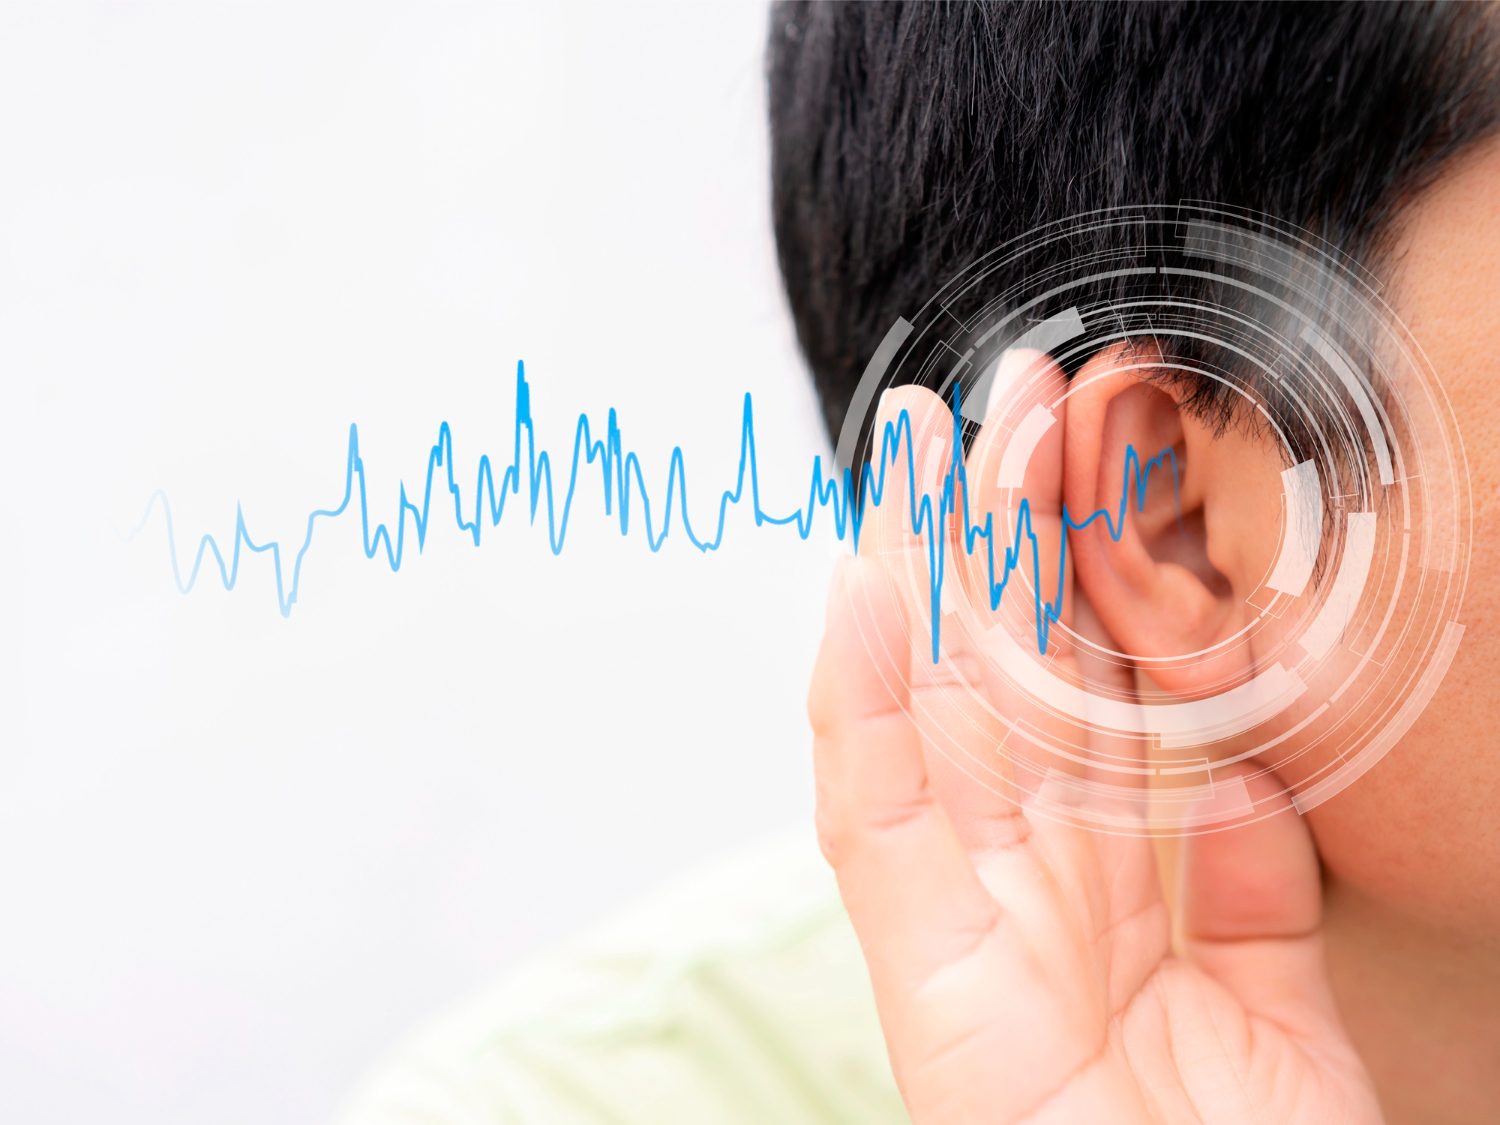 การทดสอบการได้ยินนั้นสำคัญอย่างไร